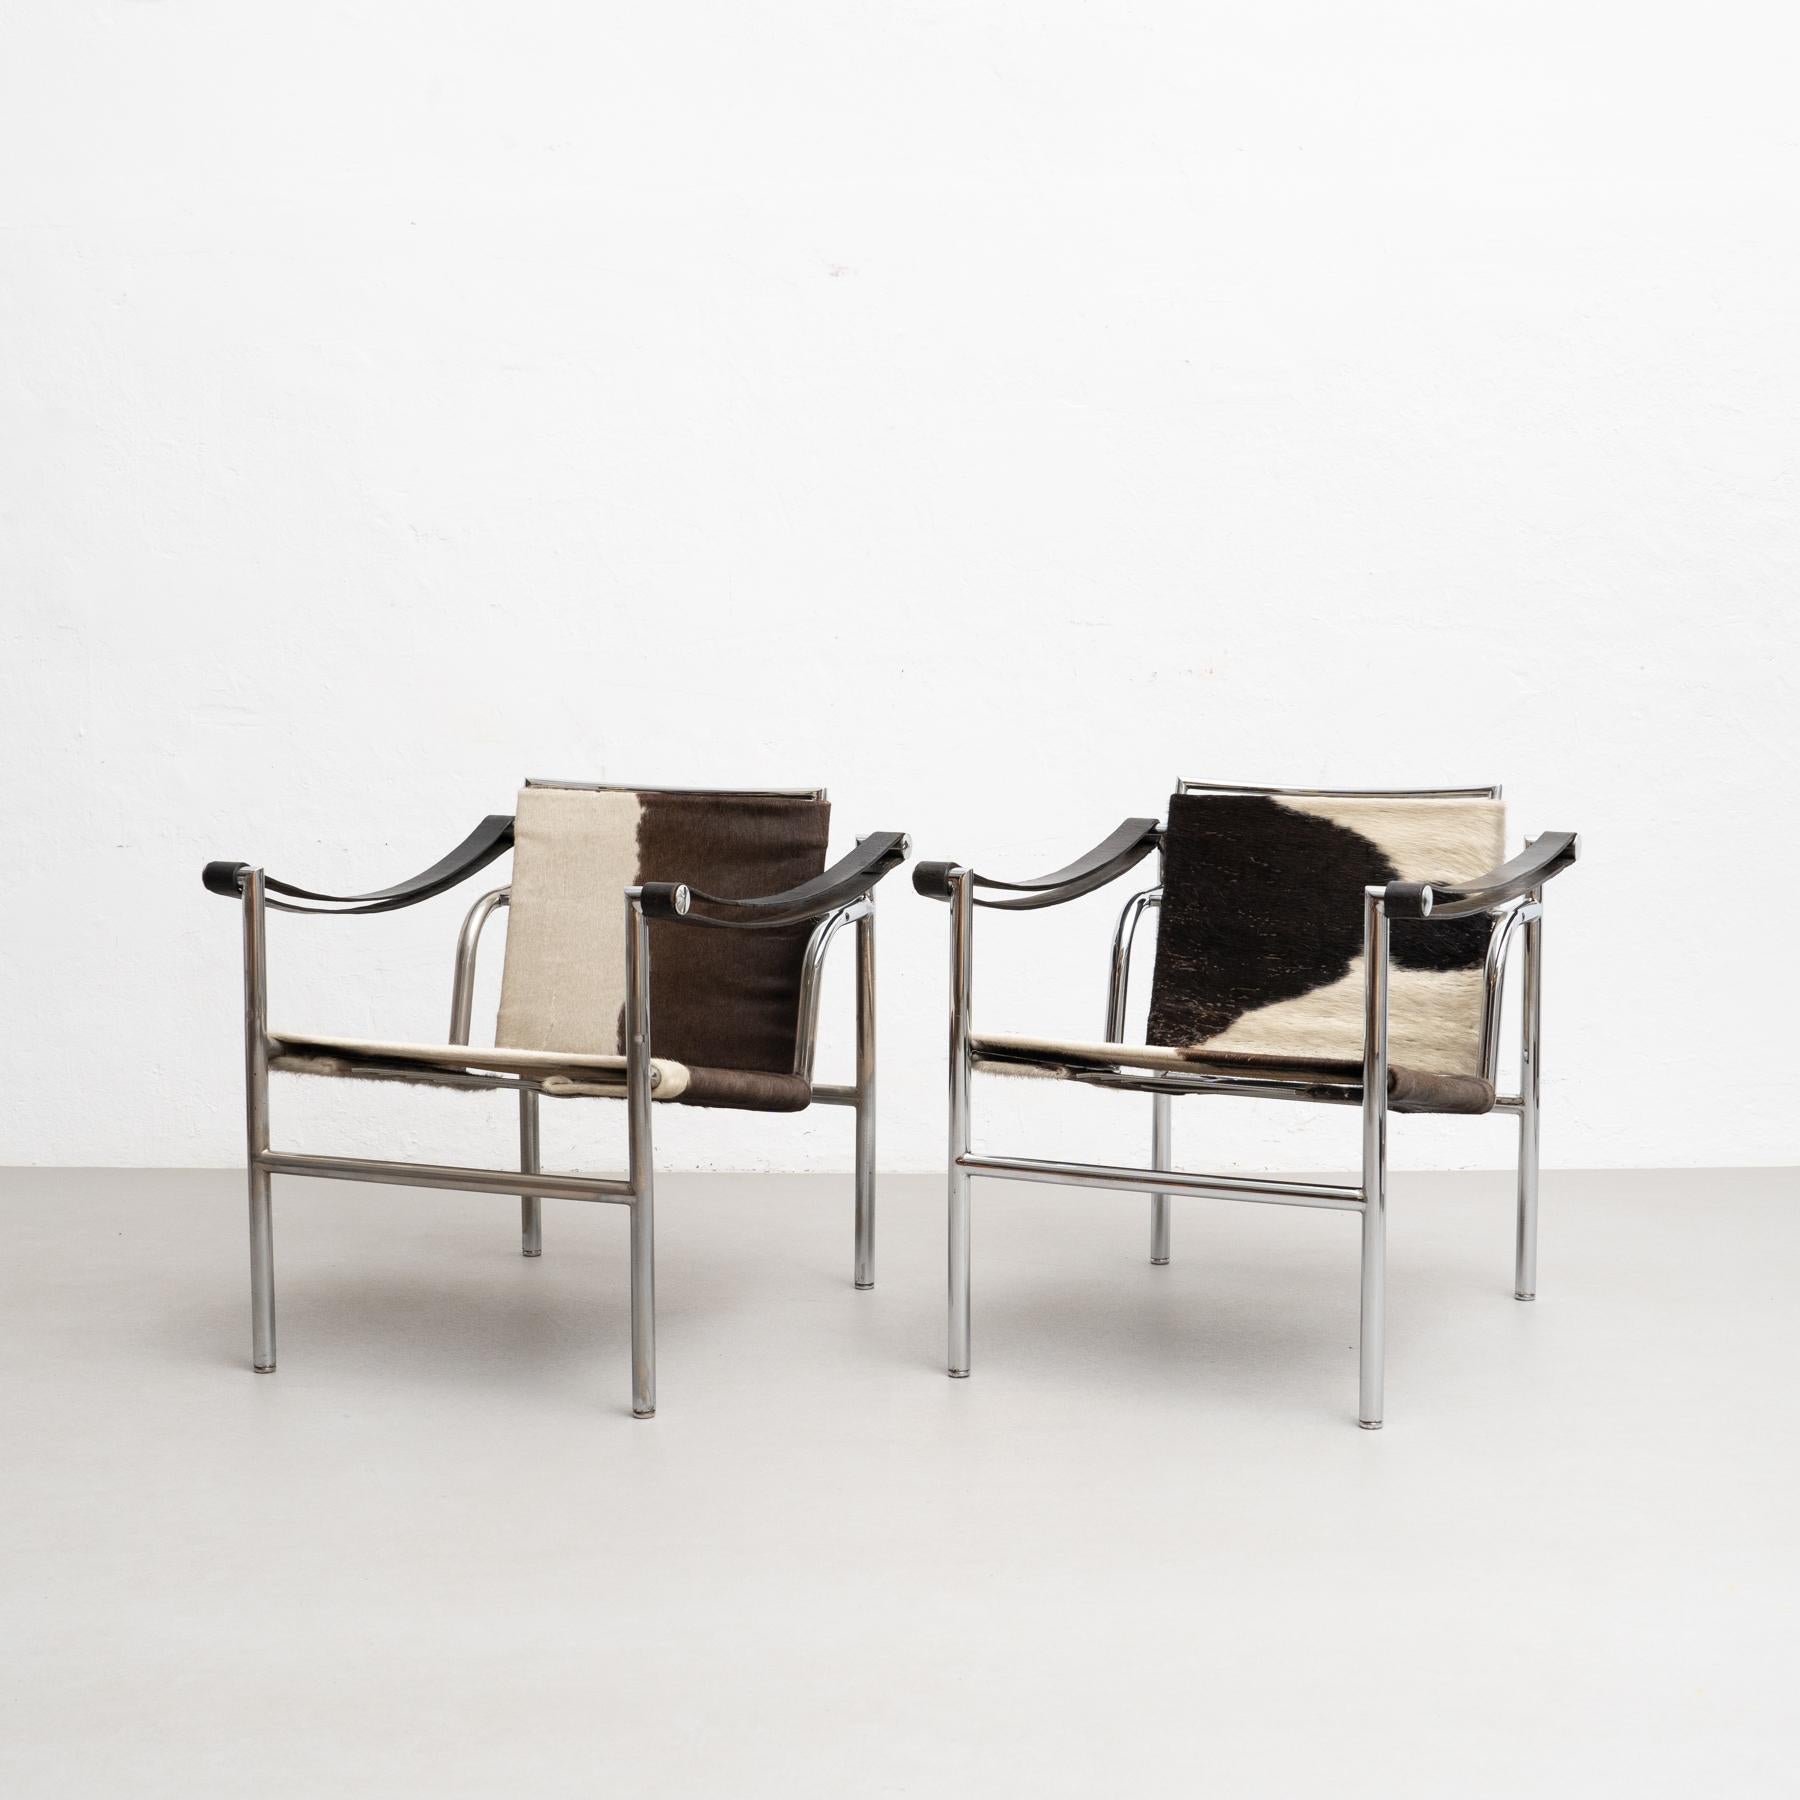 Lc1 Stuhl, entworfen von Le Corbusier, Pierre Jeanneret und Charlotte Perriand im Jahr 1928. Wiedereinführung 1960.

Hergestellt von Cassina in Italien, um 1960.

Ein leichter, kompakter Stuhl, der zusammen mit anderen wichtigen Modellen wie den